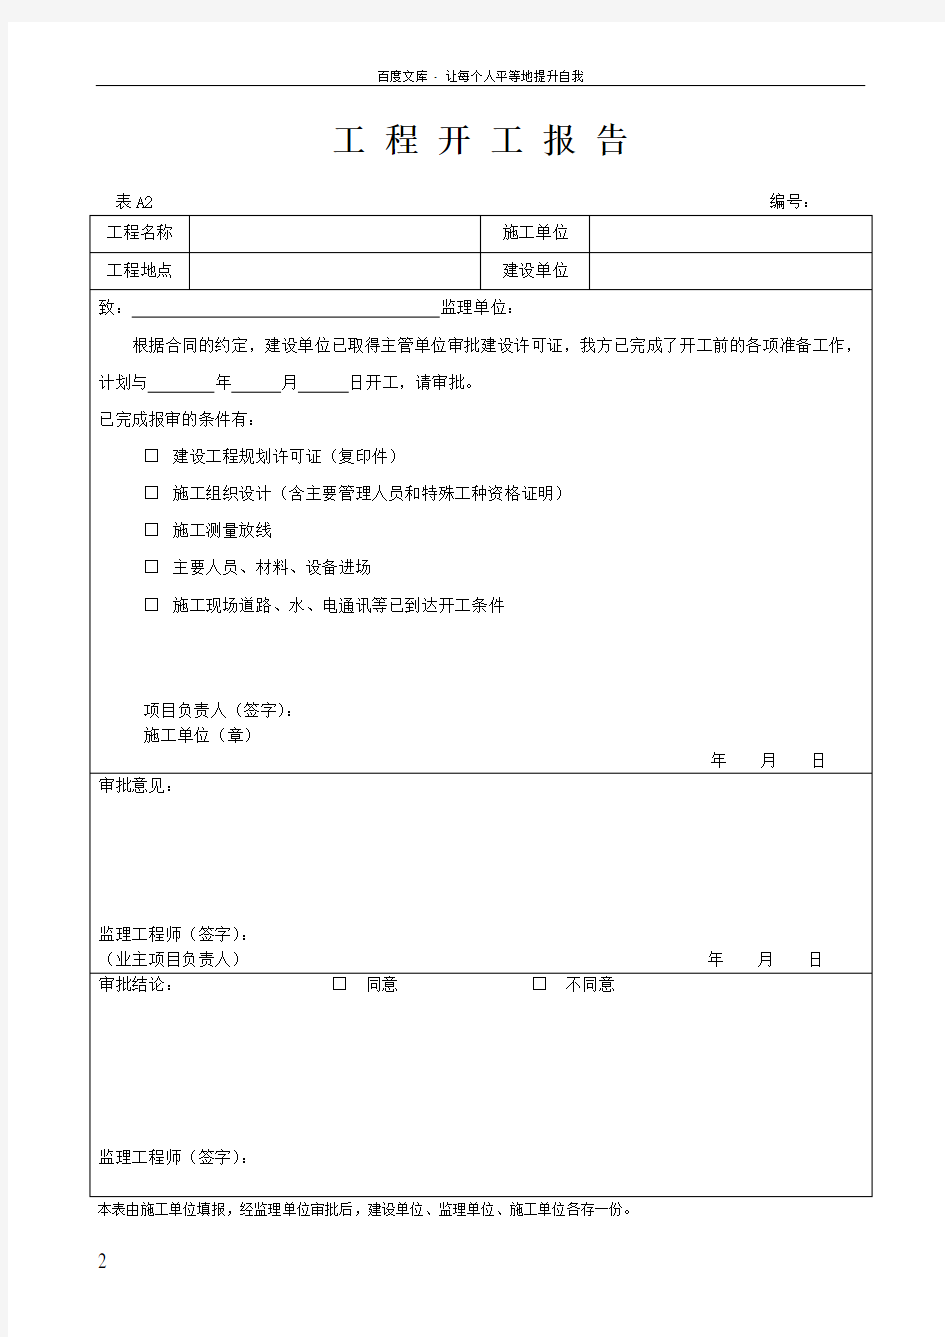 武汉建设监理规范用表(ABC类表)